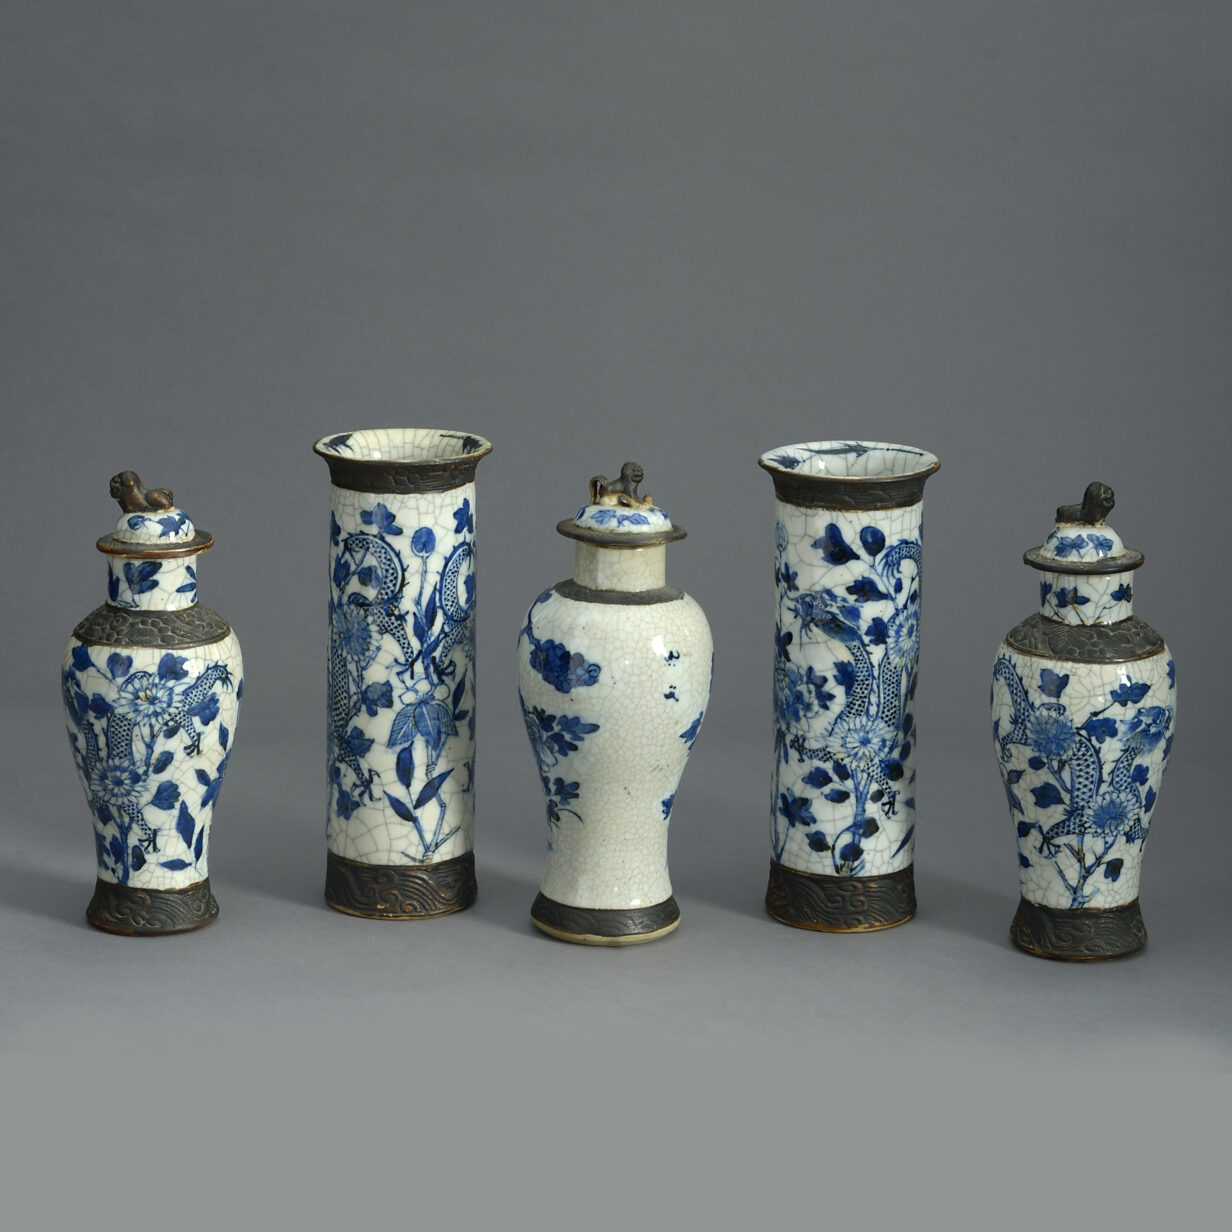 Garniture of five crackle vases